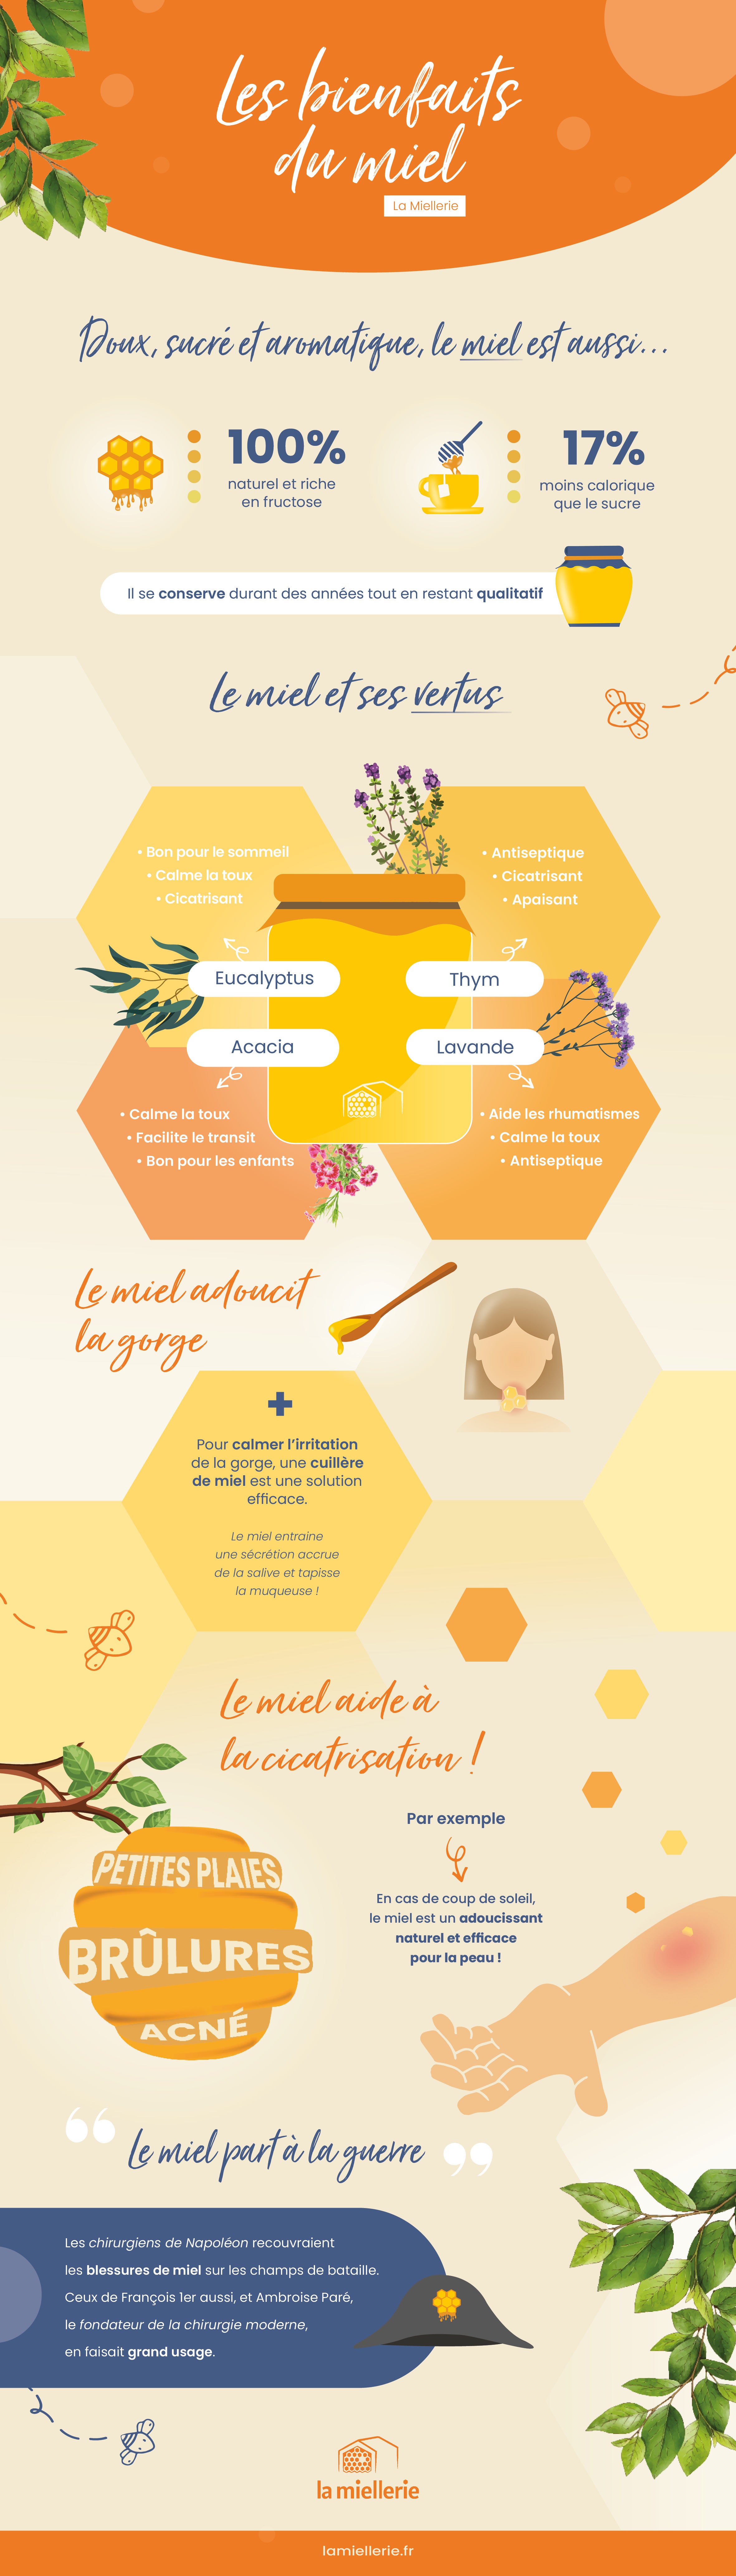 Infographie les bienfaits du miel